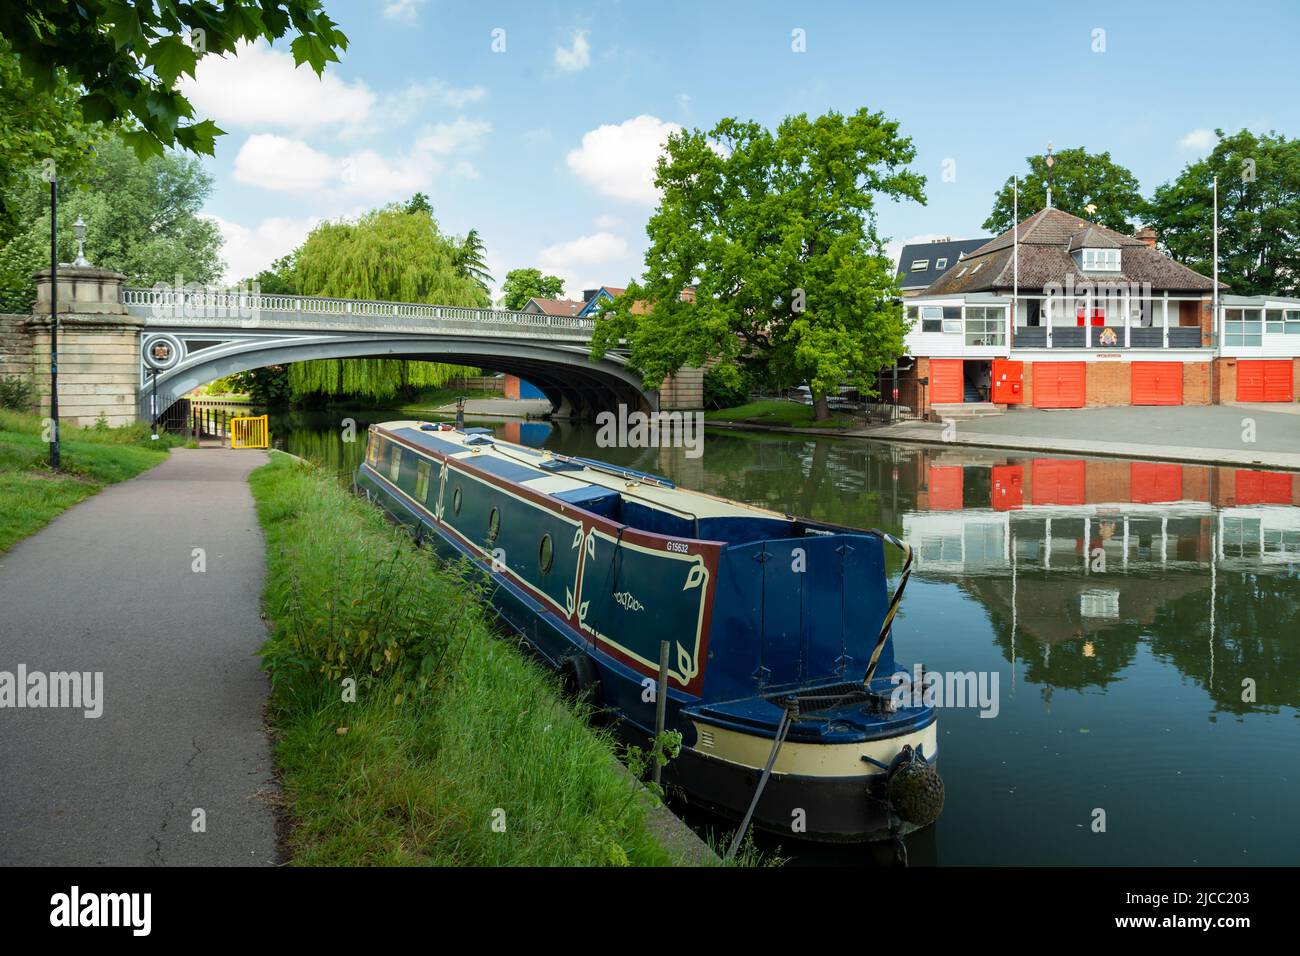 Casa galleggiante sul fiume Cam a Cambridge, Inghilterra. Foto Stock